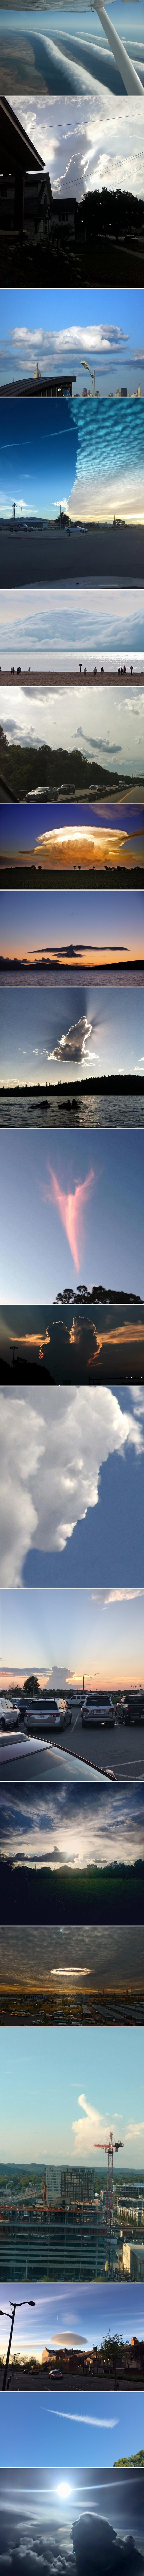 Nevjerojatne fotografije oblaka najčudnijih oblika koje su ljude ostavile bez daha